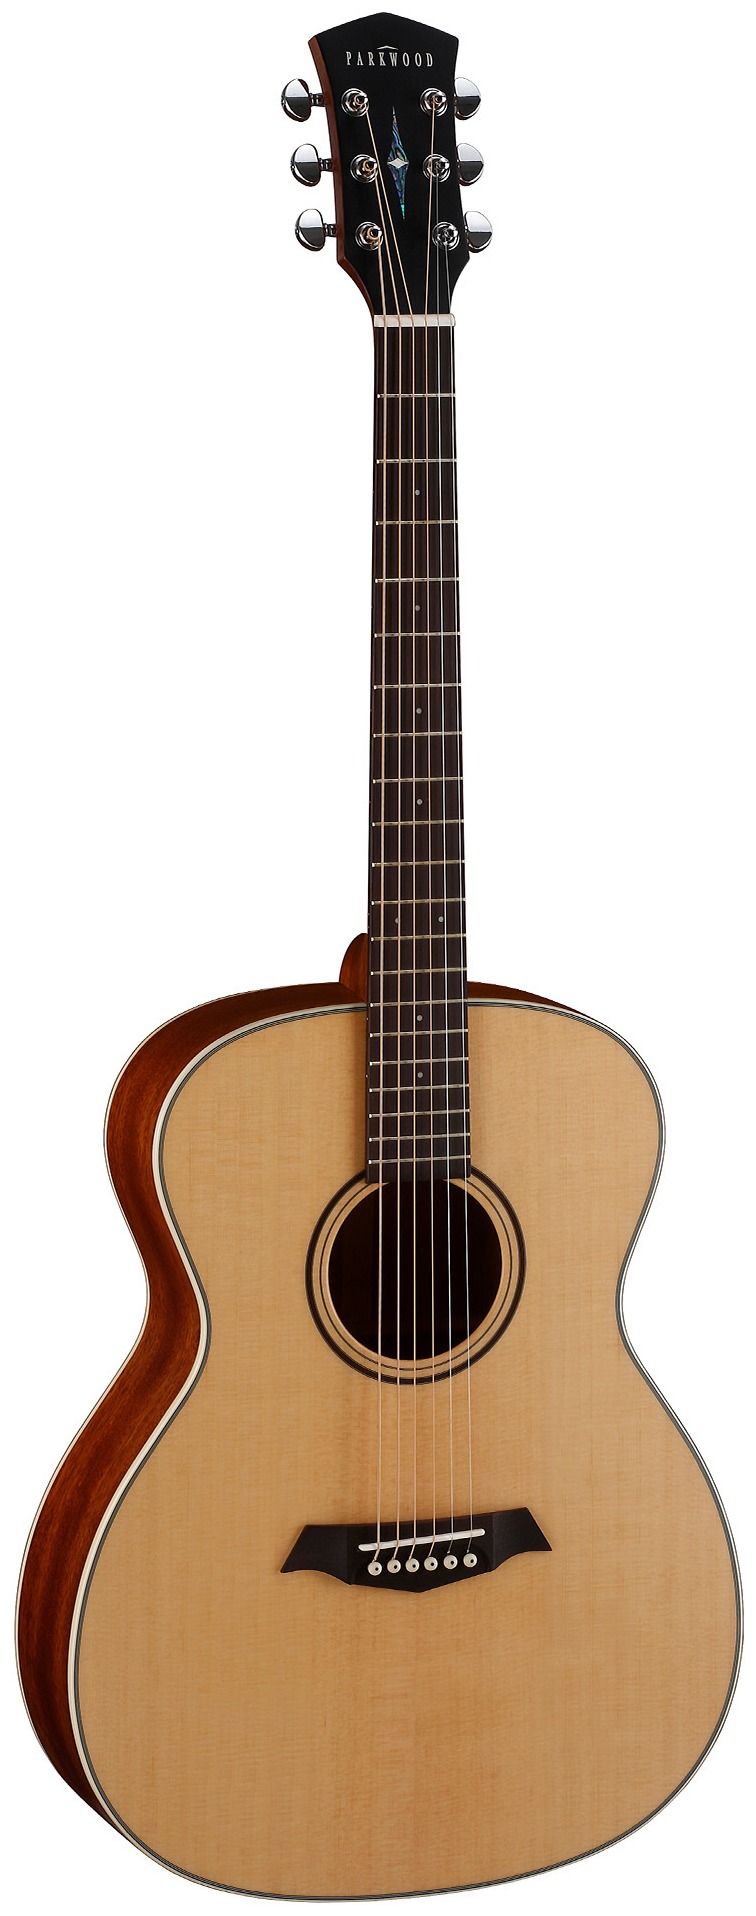 Акустические гитары Parkwood S22-GT (чехол в комплекте) электроакустические гитары parkwood s67 чехол в комплекте